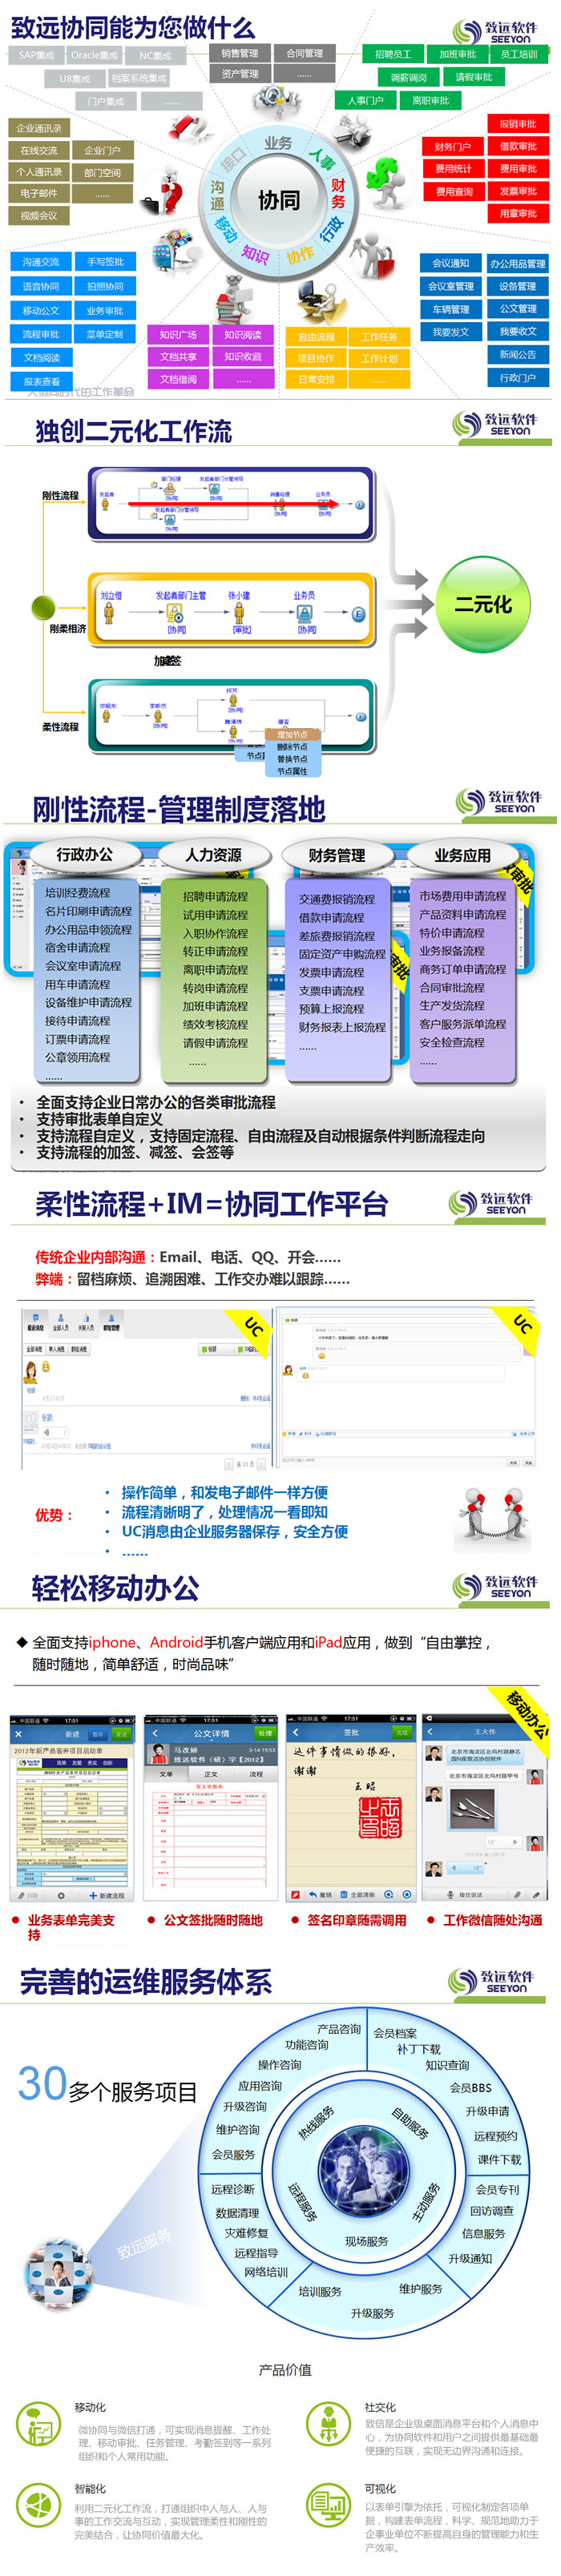 上海金蝶-A6协同管理软件